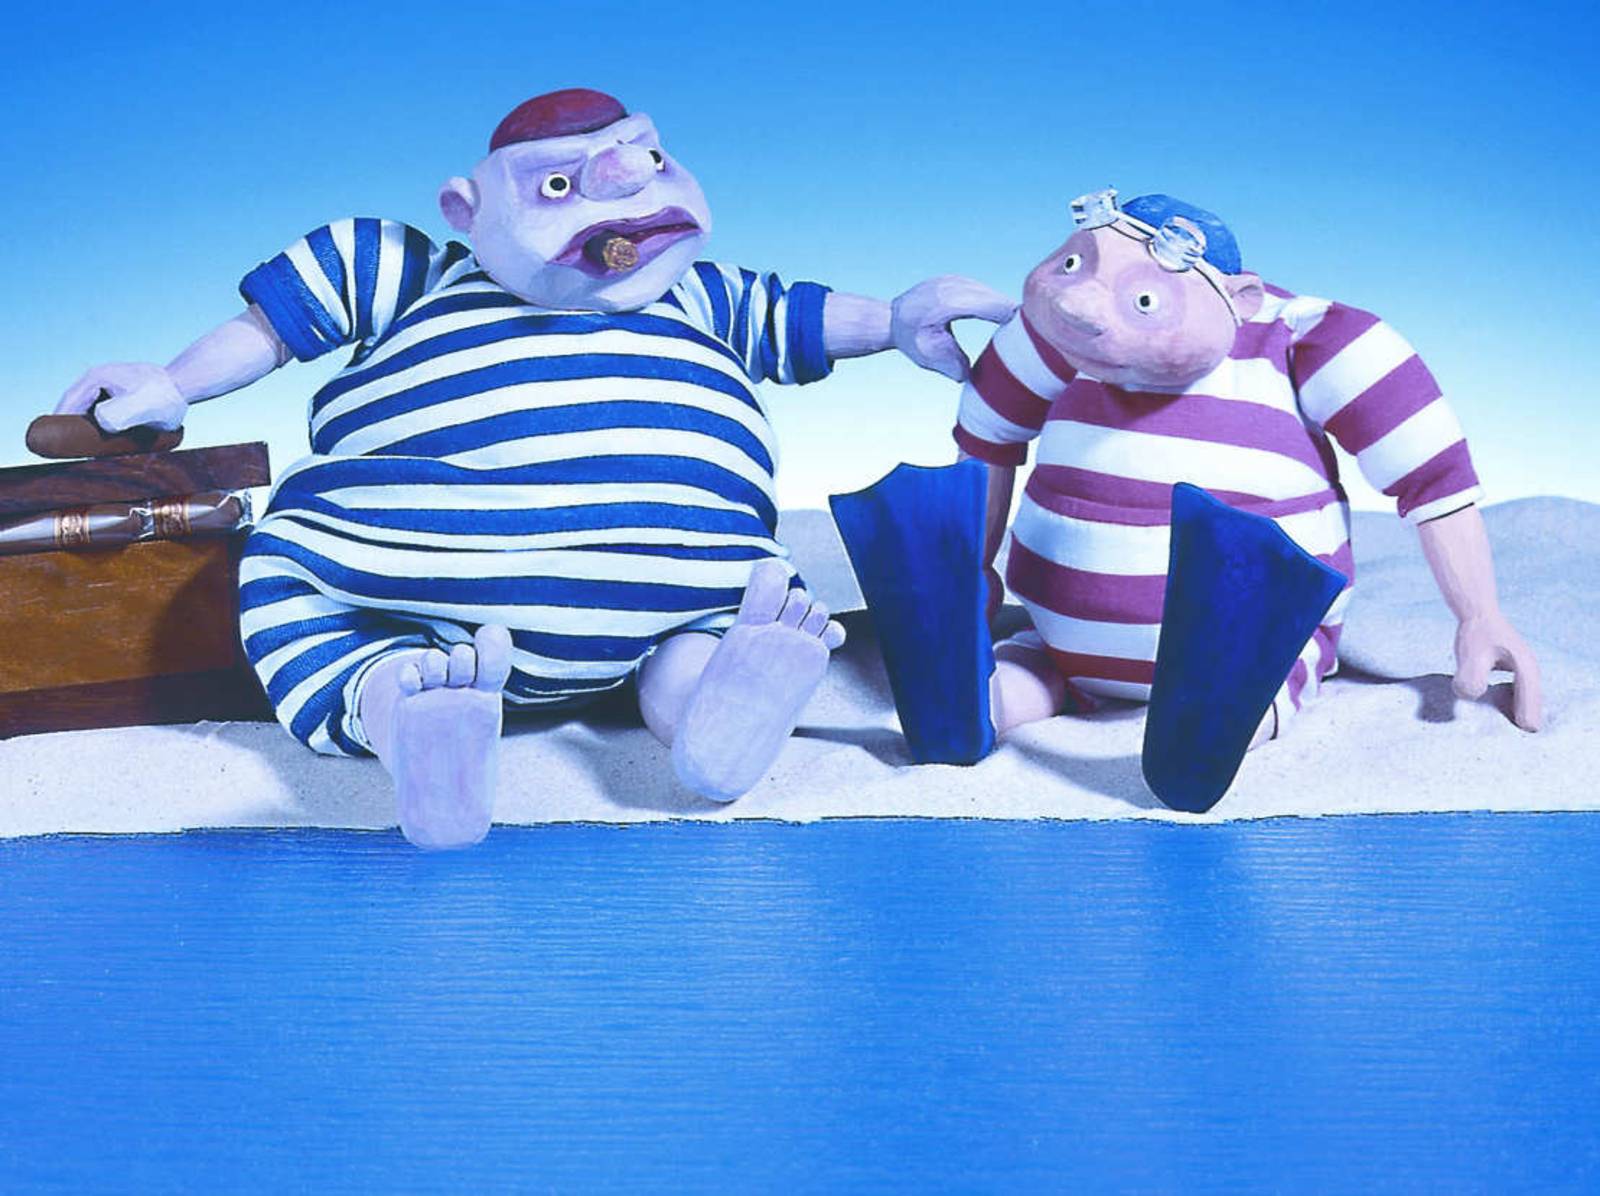 Zwei Figuren des Marmelock-Theaters: Ein dicker Mann im gestreiften Badeanzug mit Zigarre in der Hand und ein dicker Junge, der ebenfalls einen gestreiften Badeanzug trägt.